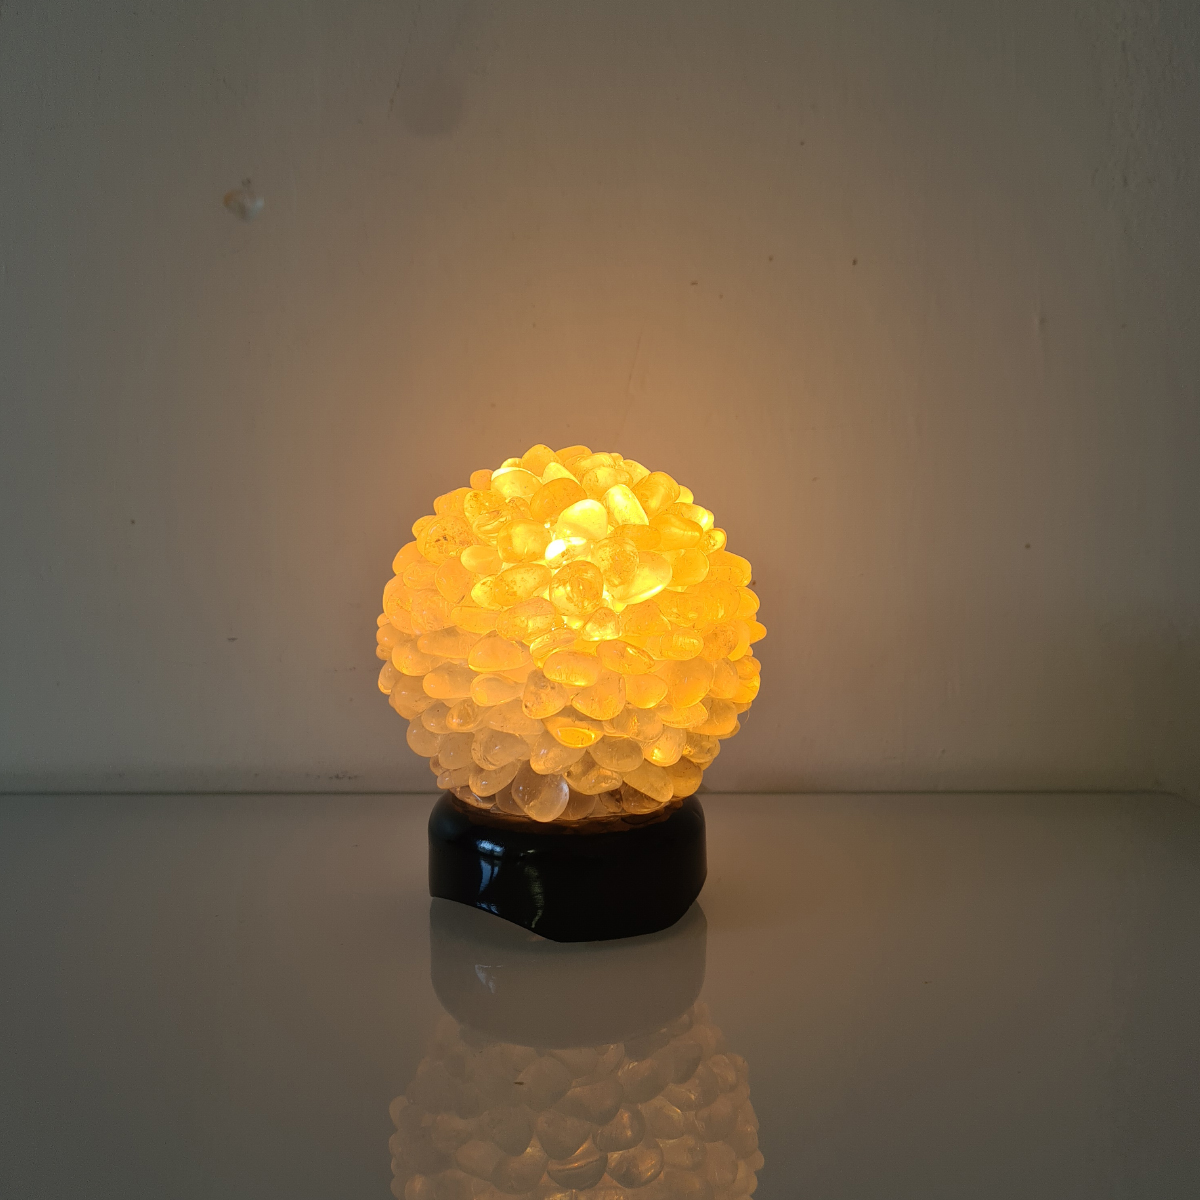 Lampe 13 cm ronde en quartz polis